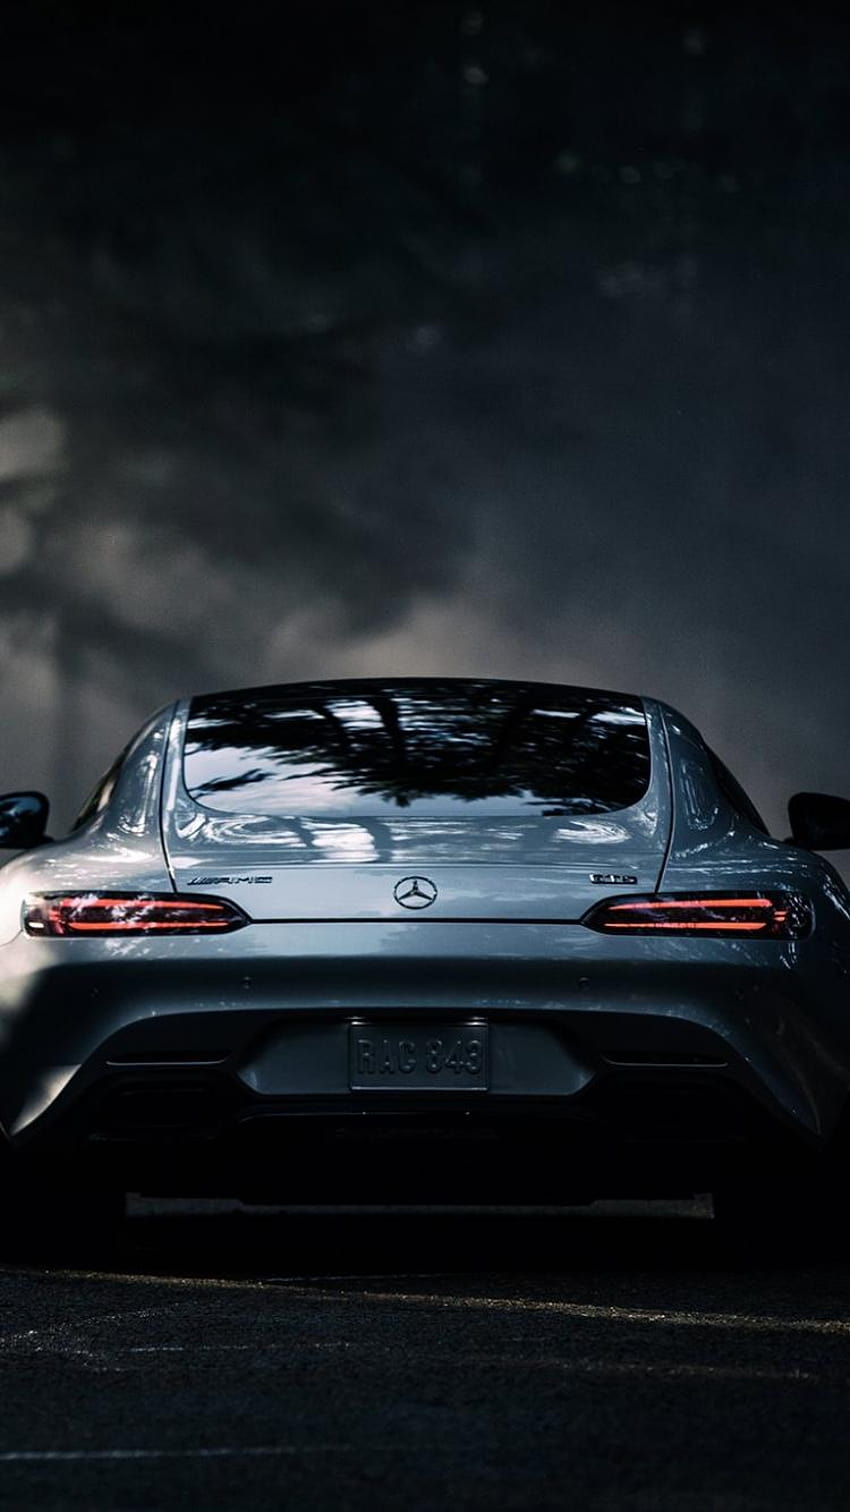 Mercedes Benz: Sự kết hợp hoàn hảo giữa vẻ đẹp, sang trọng và sức mạnh – Mercedes Benz là một trong những thương hiệu xe hơi nổi tiếng nhất trên toàn cầu. Với nhiều dòng xe mang lại trải nghiệm đi đường tuyệt vời cho người lái, hãy xem qua những hình ảnh dưới đây và cảm nhận sức hút của dòng xe Mercedes Benz.